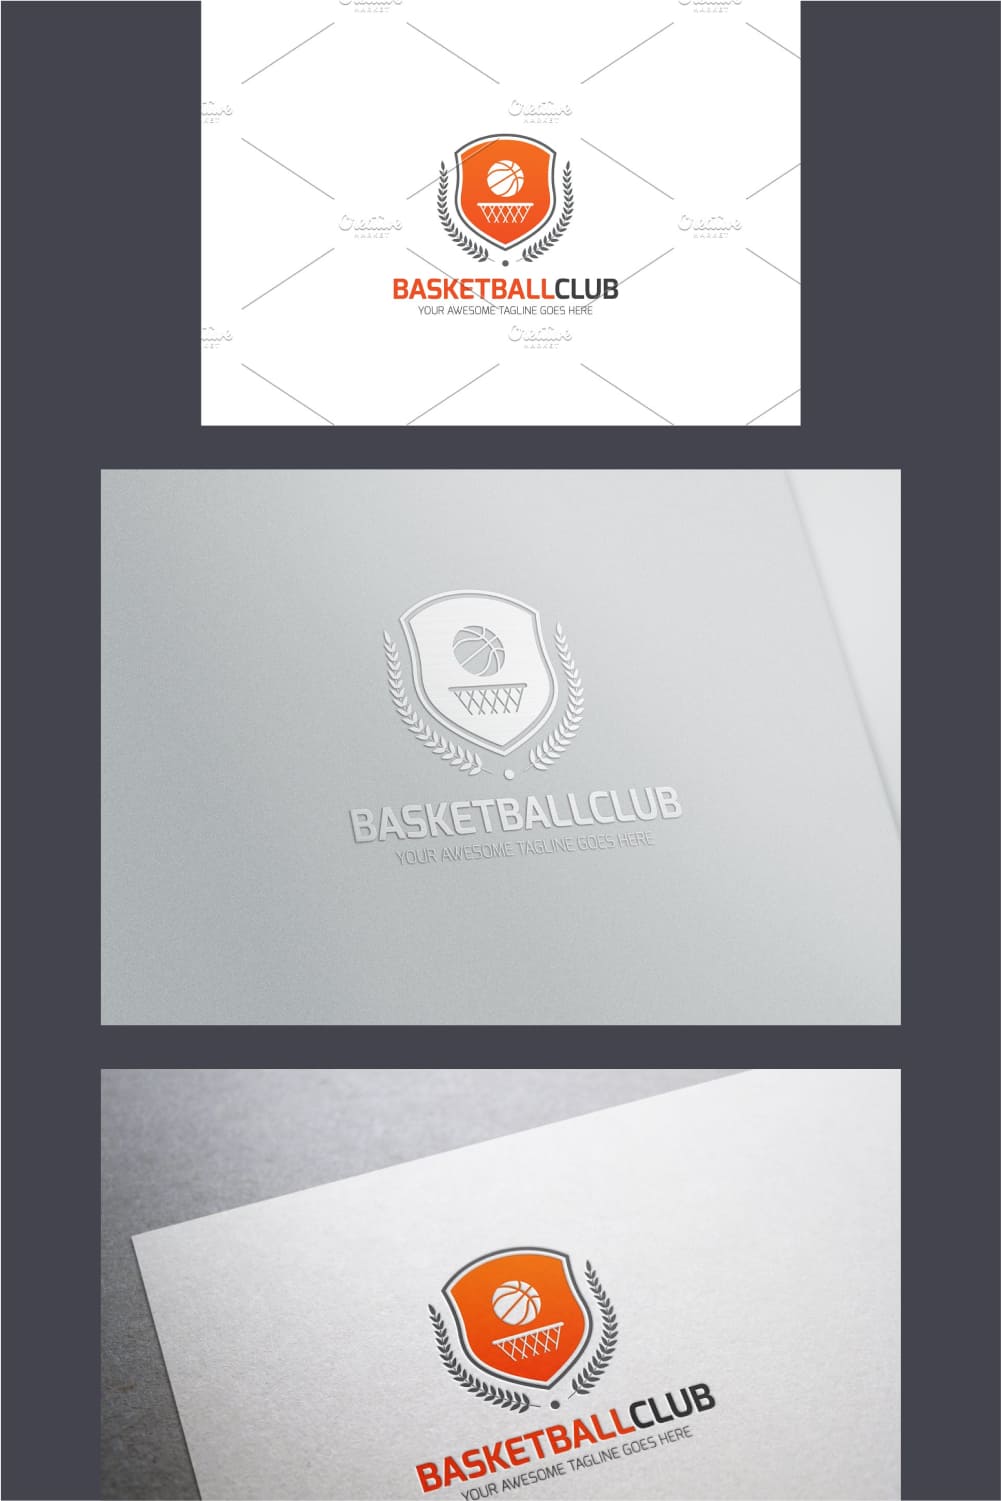 Basketball logo collection.